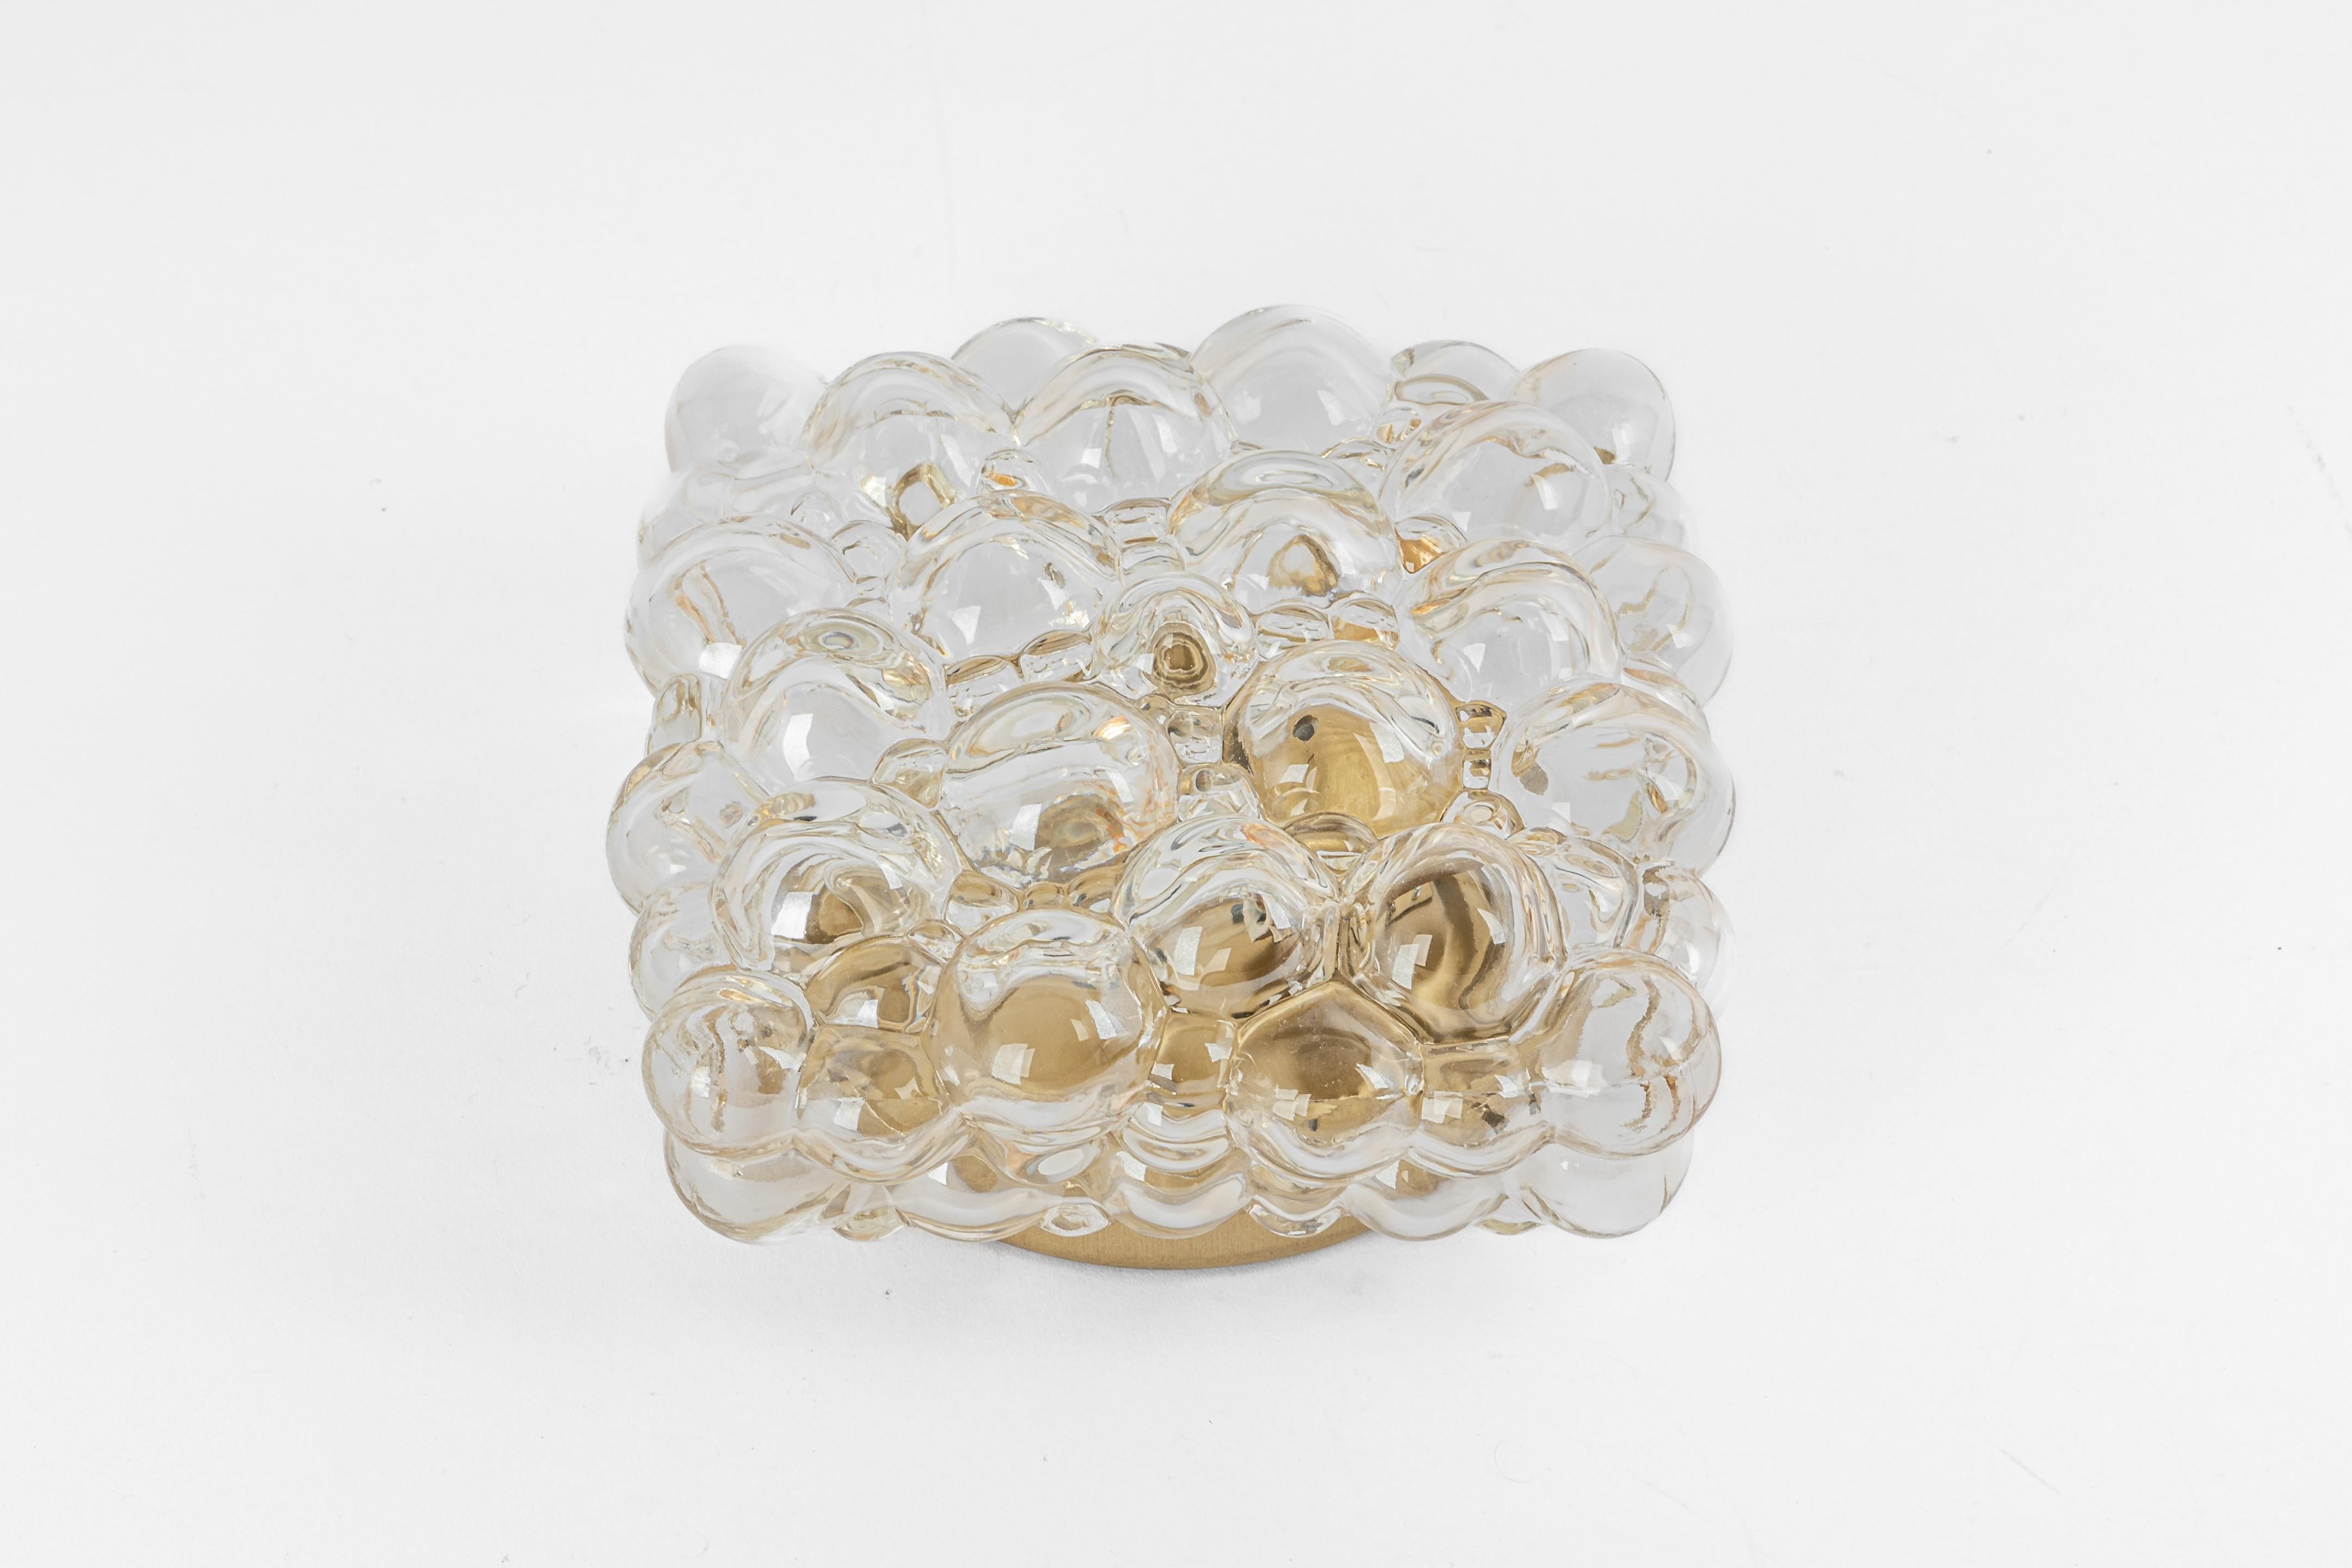 1 von 3 Petite Amber Bubble Glass Sconce im Stil von Helena Tynell, Deutschland.
Hochwertig und in sehr gutem Zustand. Gereinigt, gut verkabelt und einsatzbereit. 

Jeder Wandleuchter benötigt 1 x E14 Glühbirnen mit je 60W max. 
Glühbirnen sind